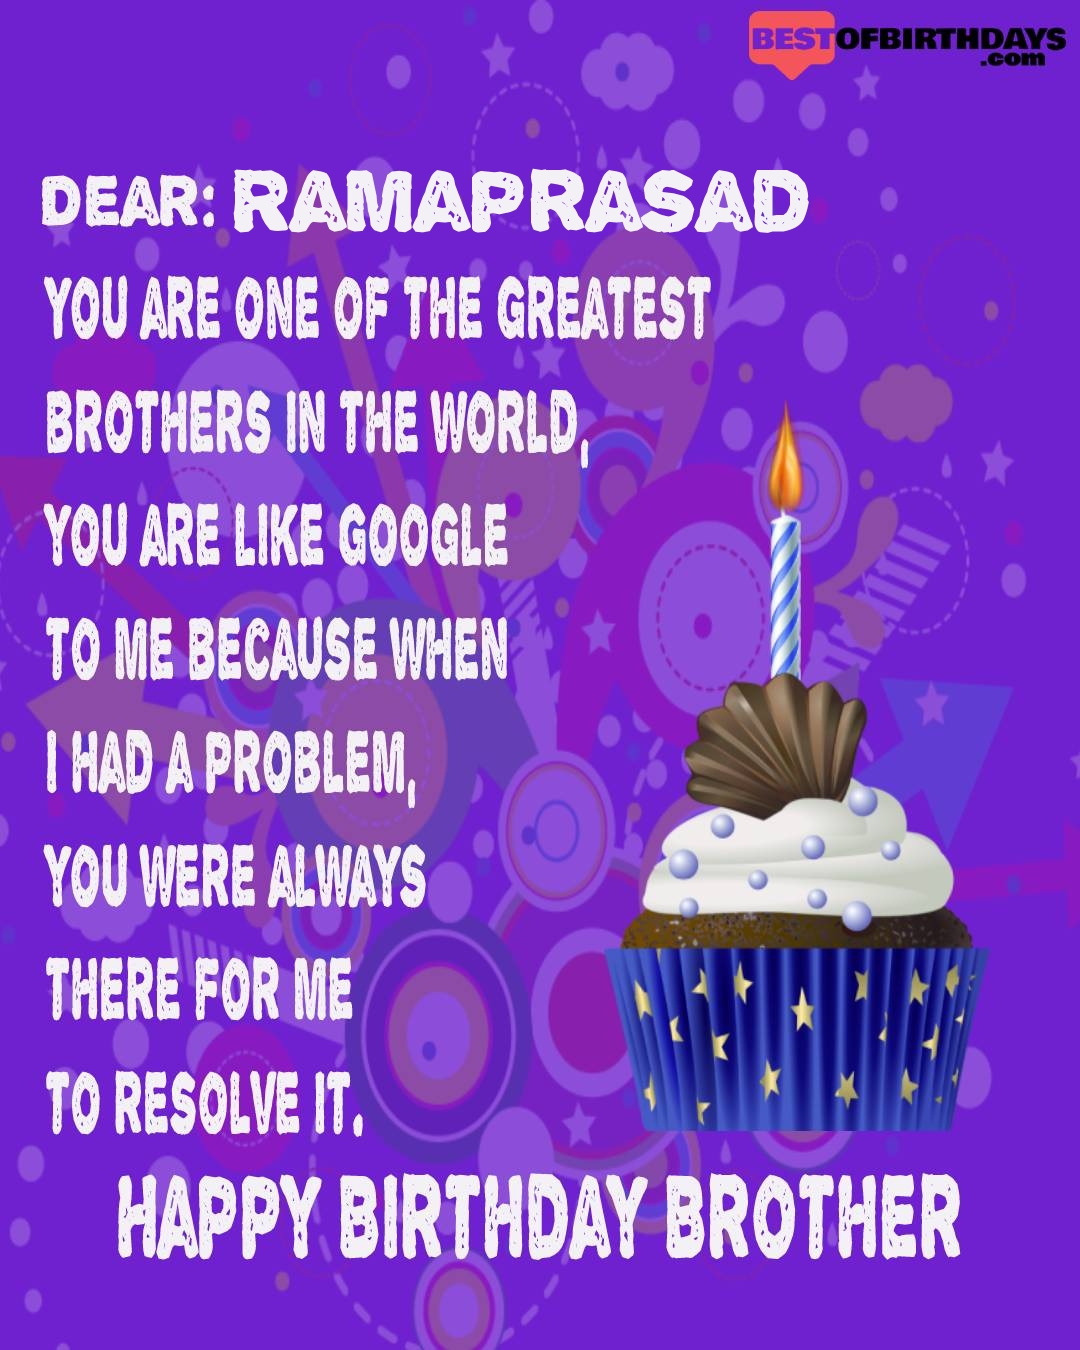 Happy birthday ramaprasad bhai brother bro